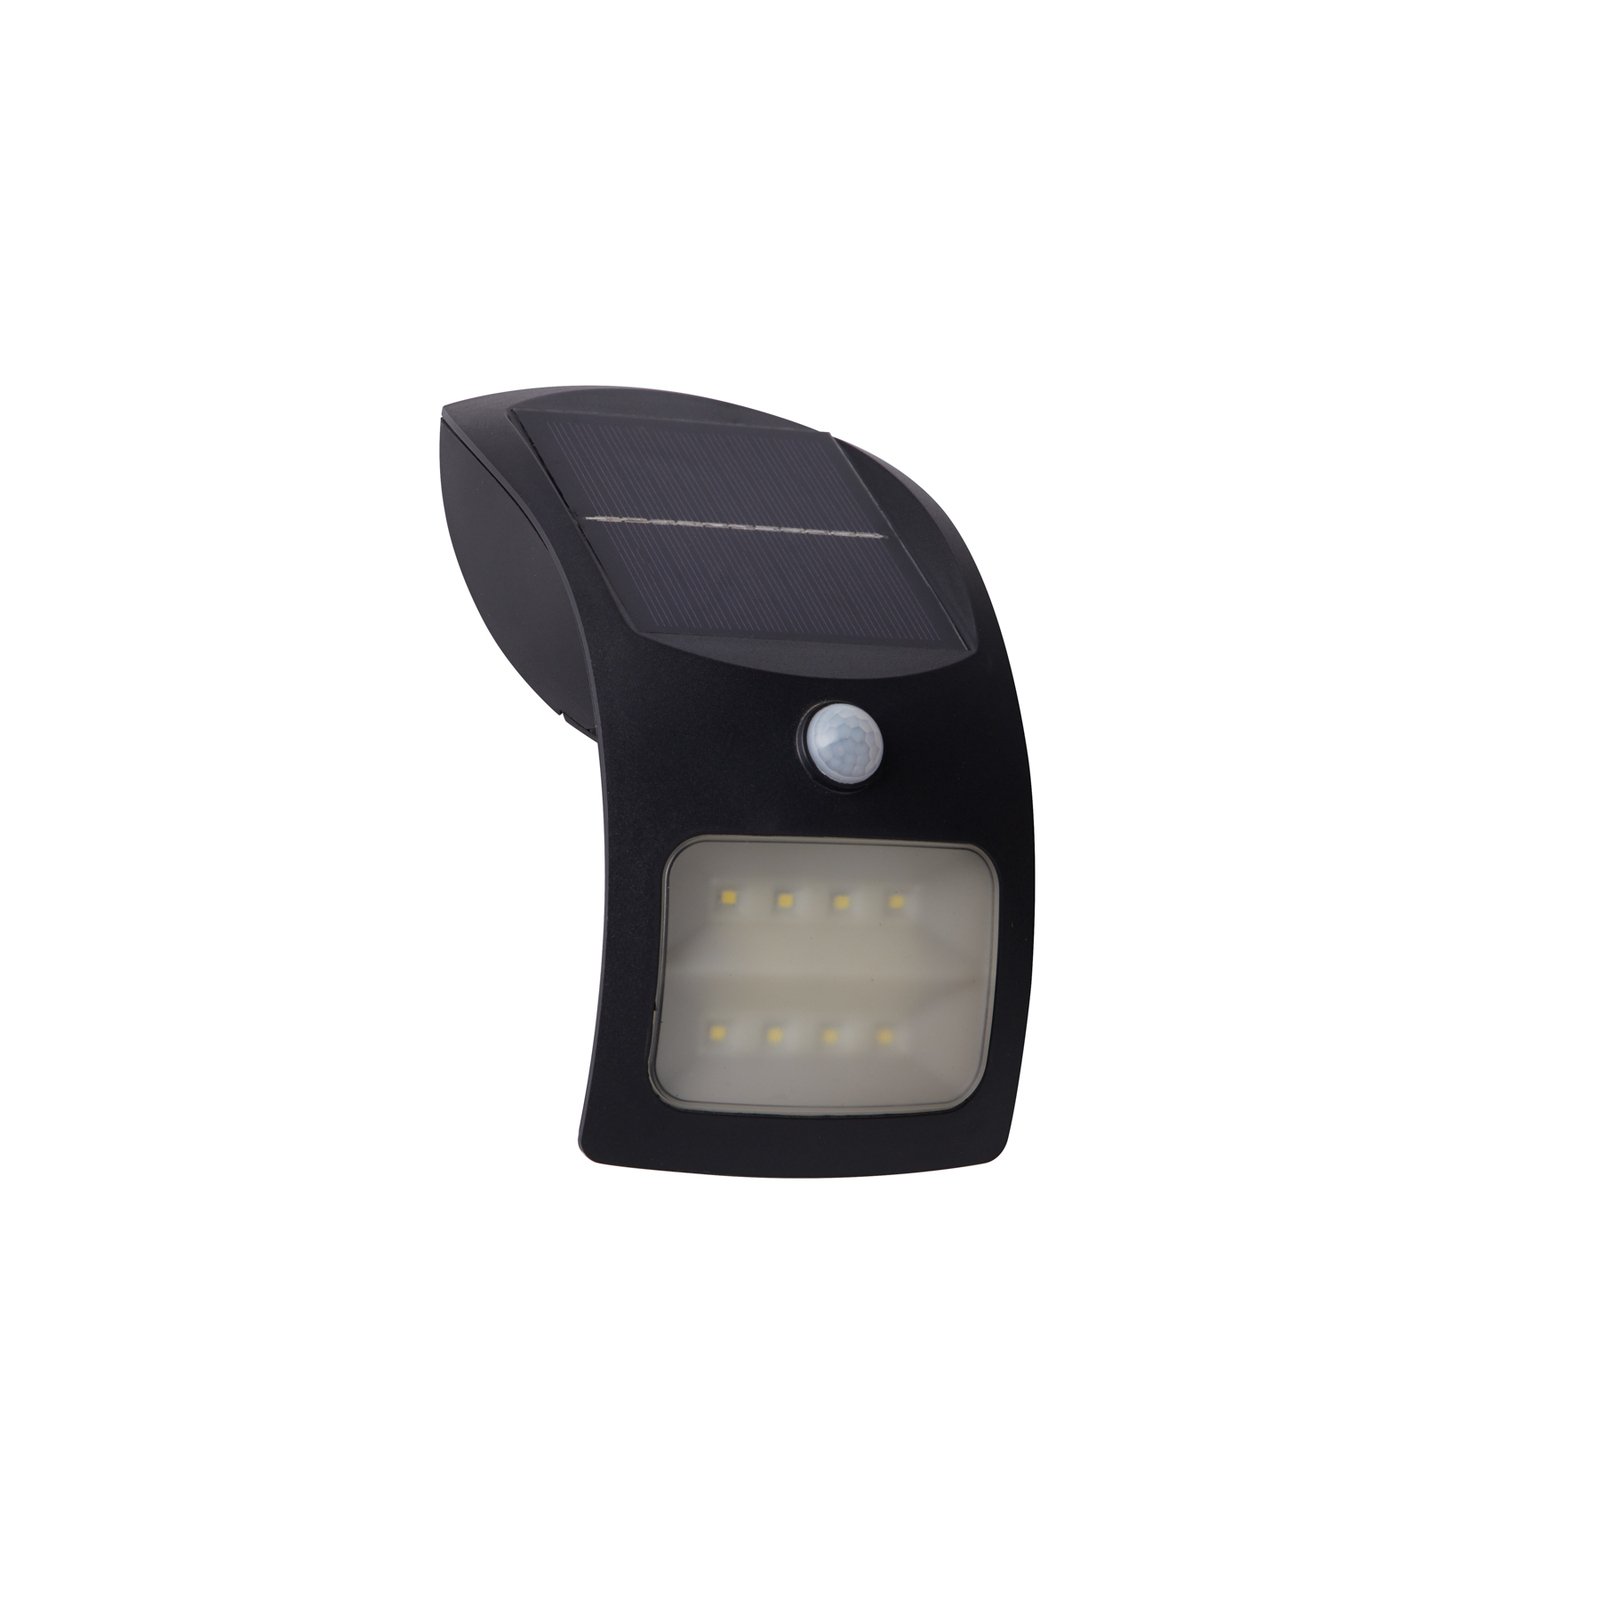 LED wall light 67420BK-PIR, motion detector